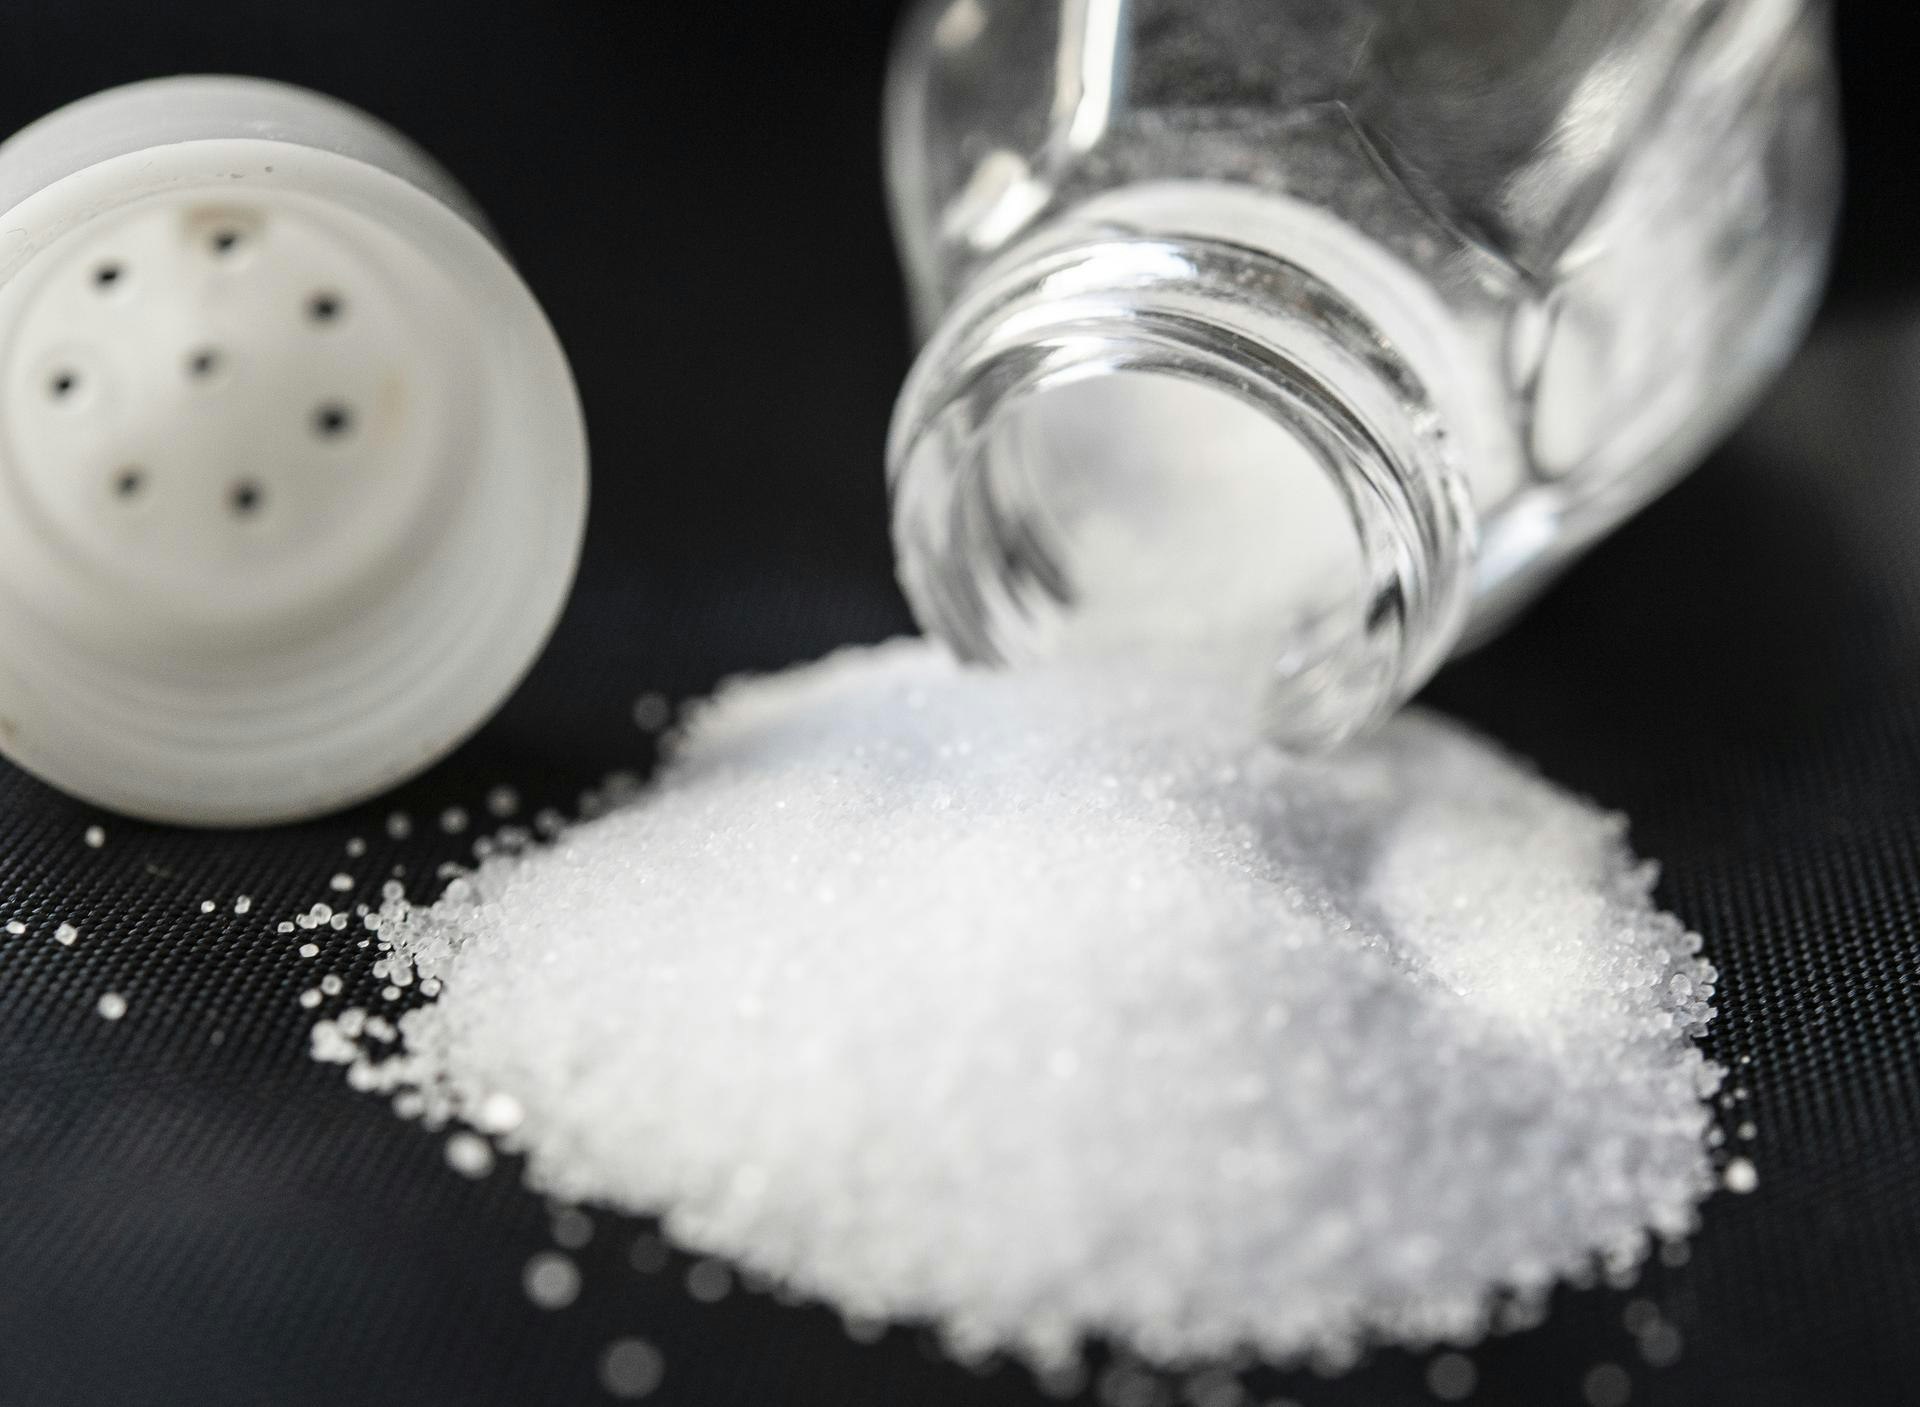 Kochen: Wieso brauchen wir Salz im Kochwasser? | Express